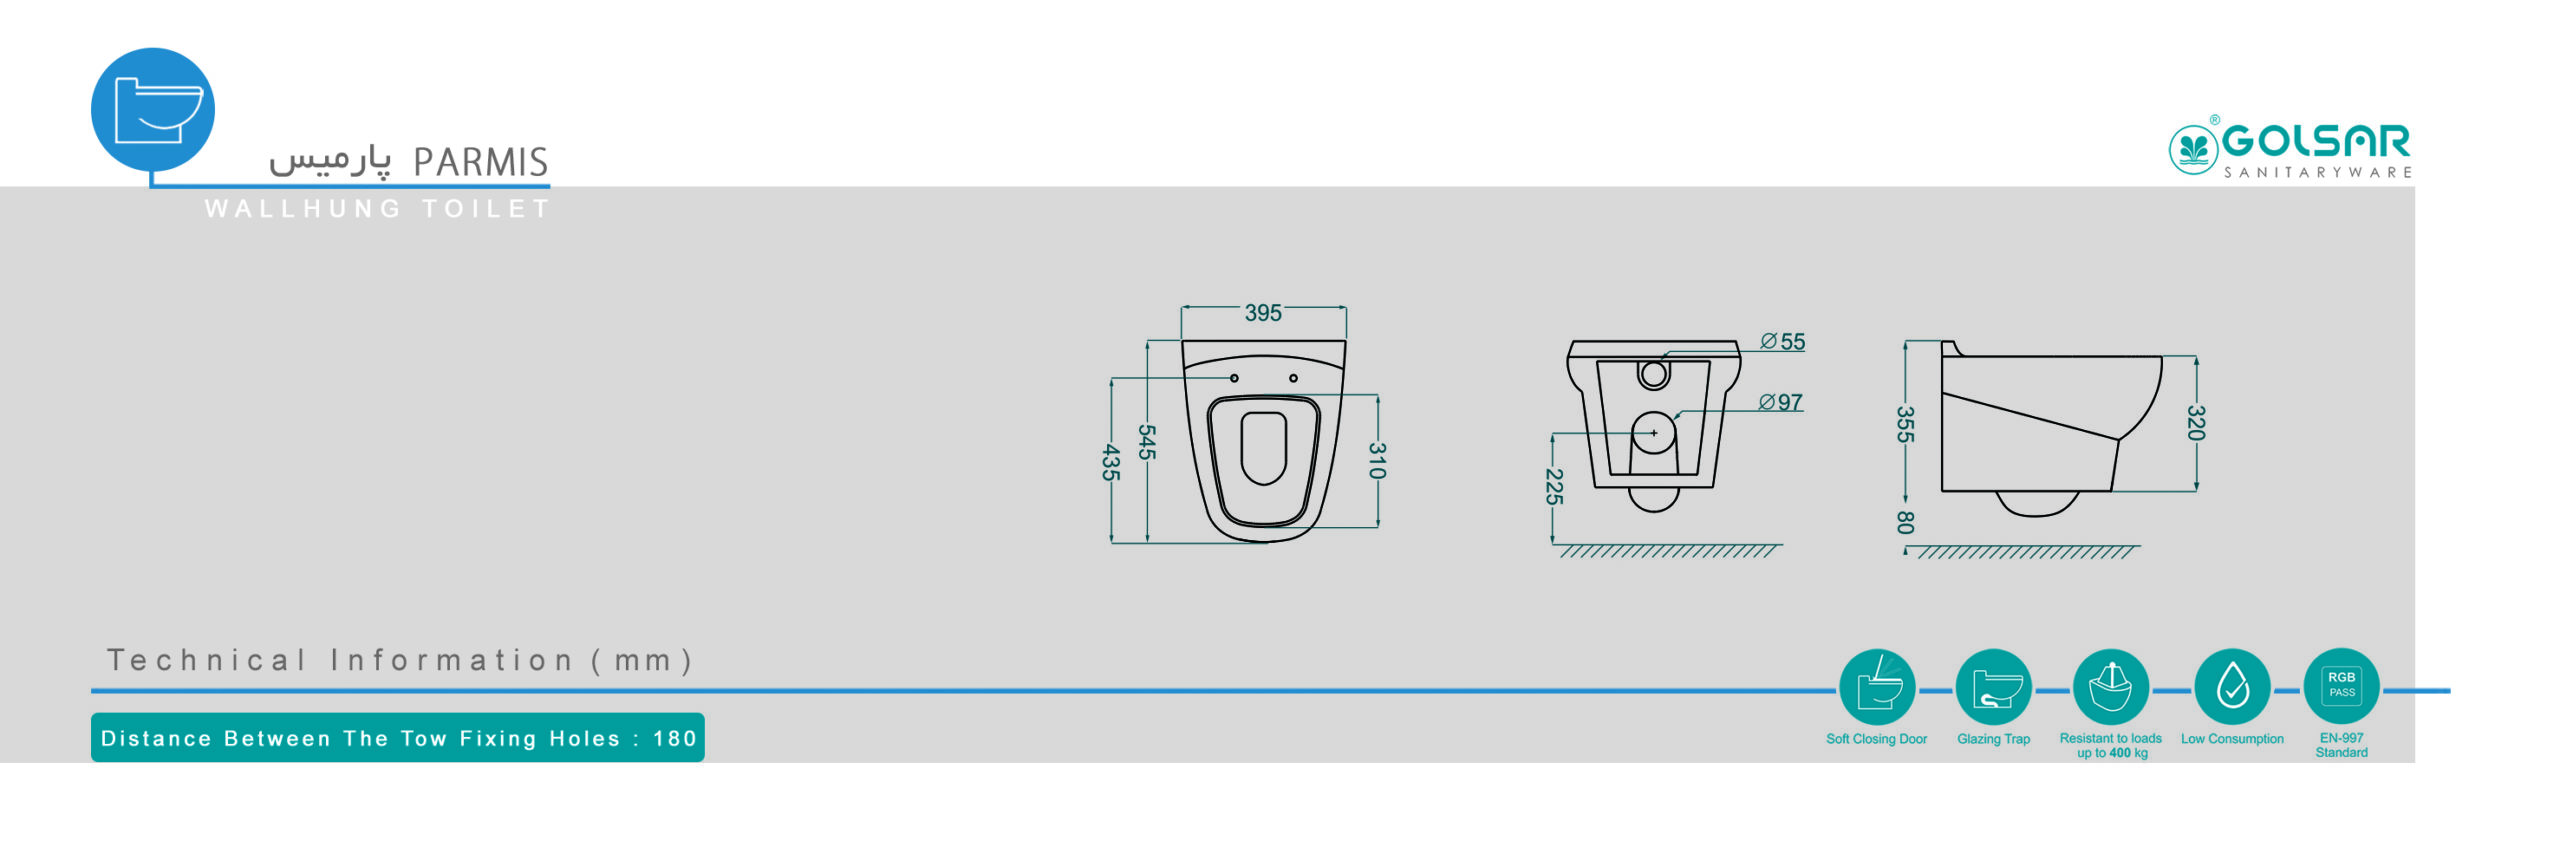 ابعاد و مشخصات توالت فرنگی وال هنگ پارمیس